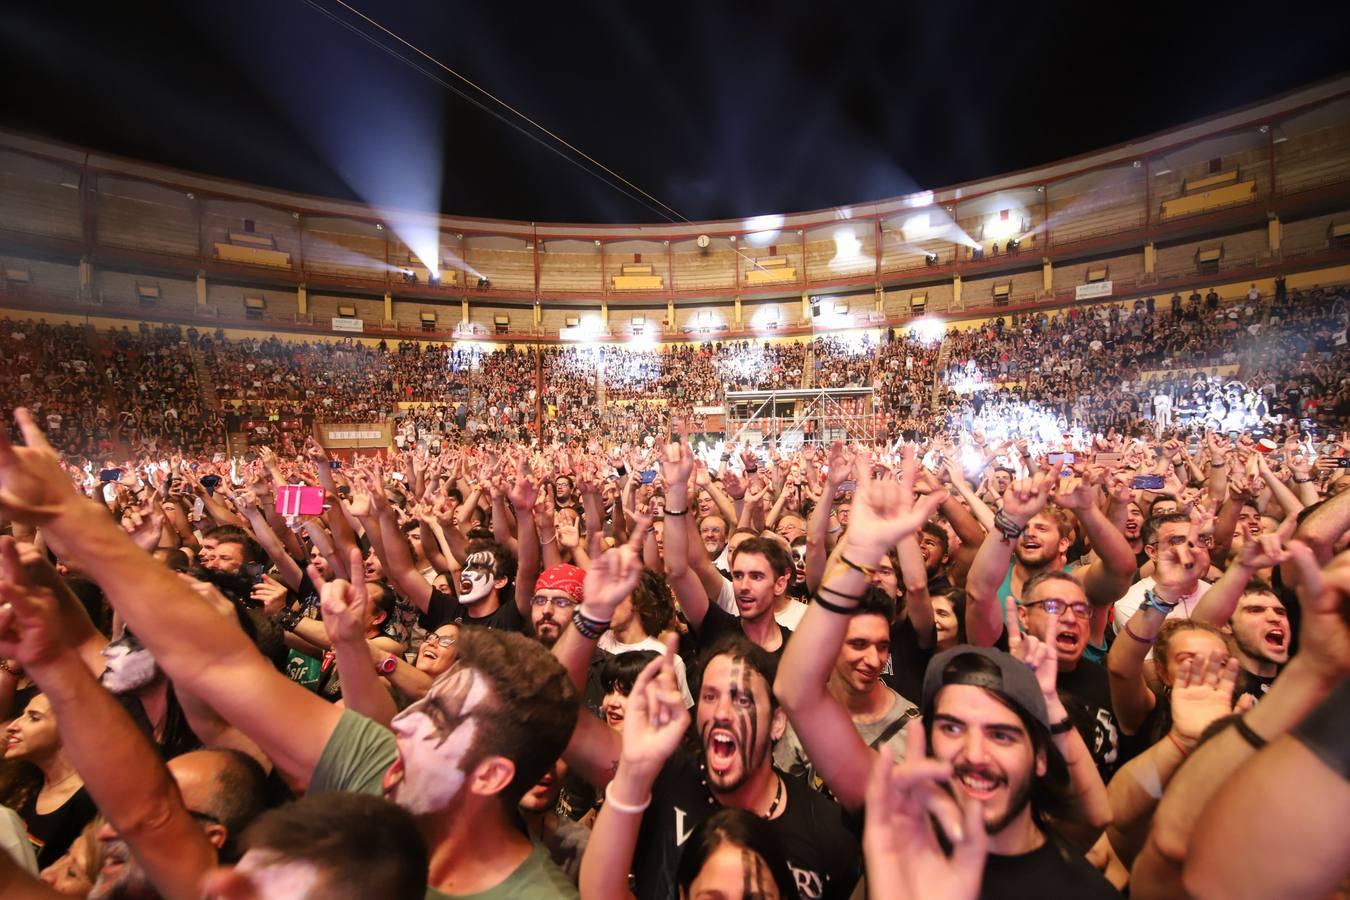 Festival de la Guitarra de Córdoba de 2018 | El concierto de Kiss en imágenes